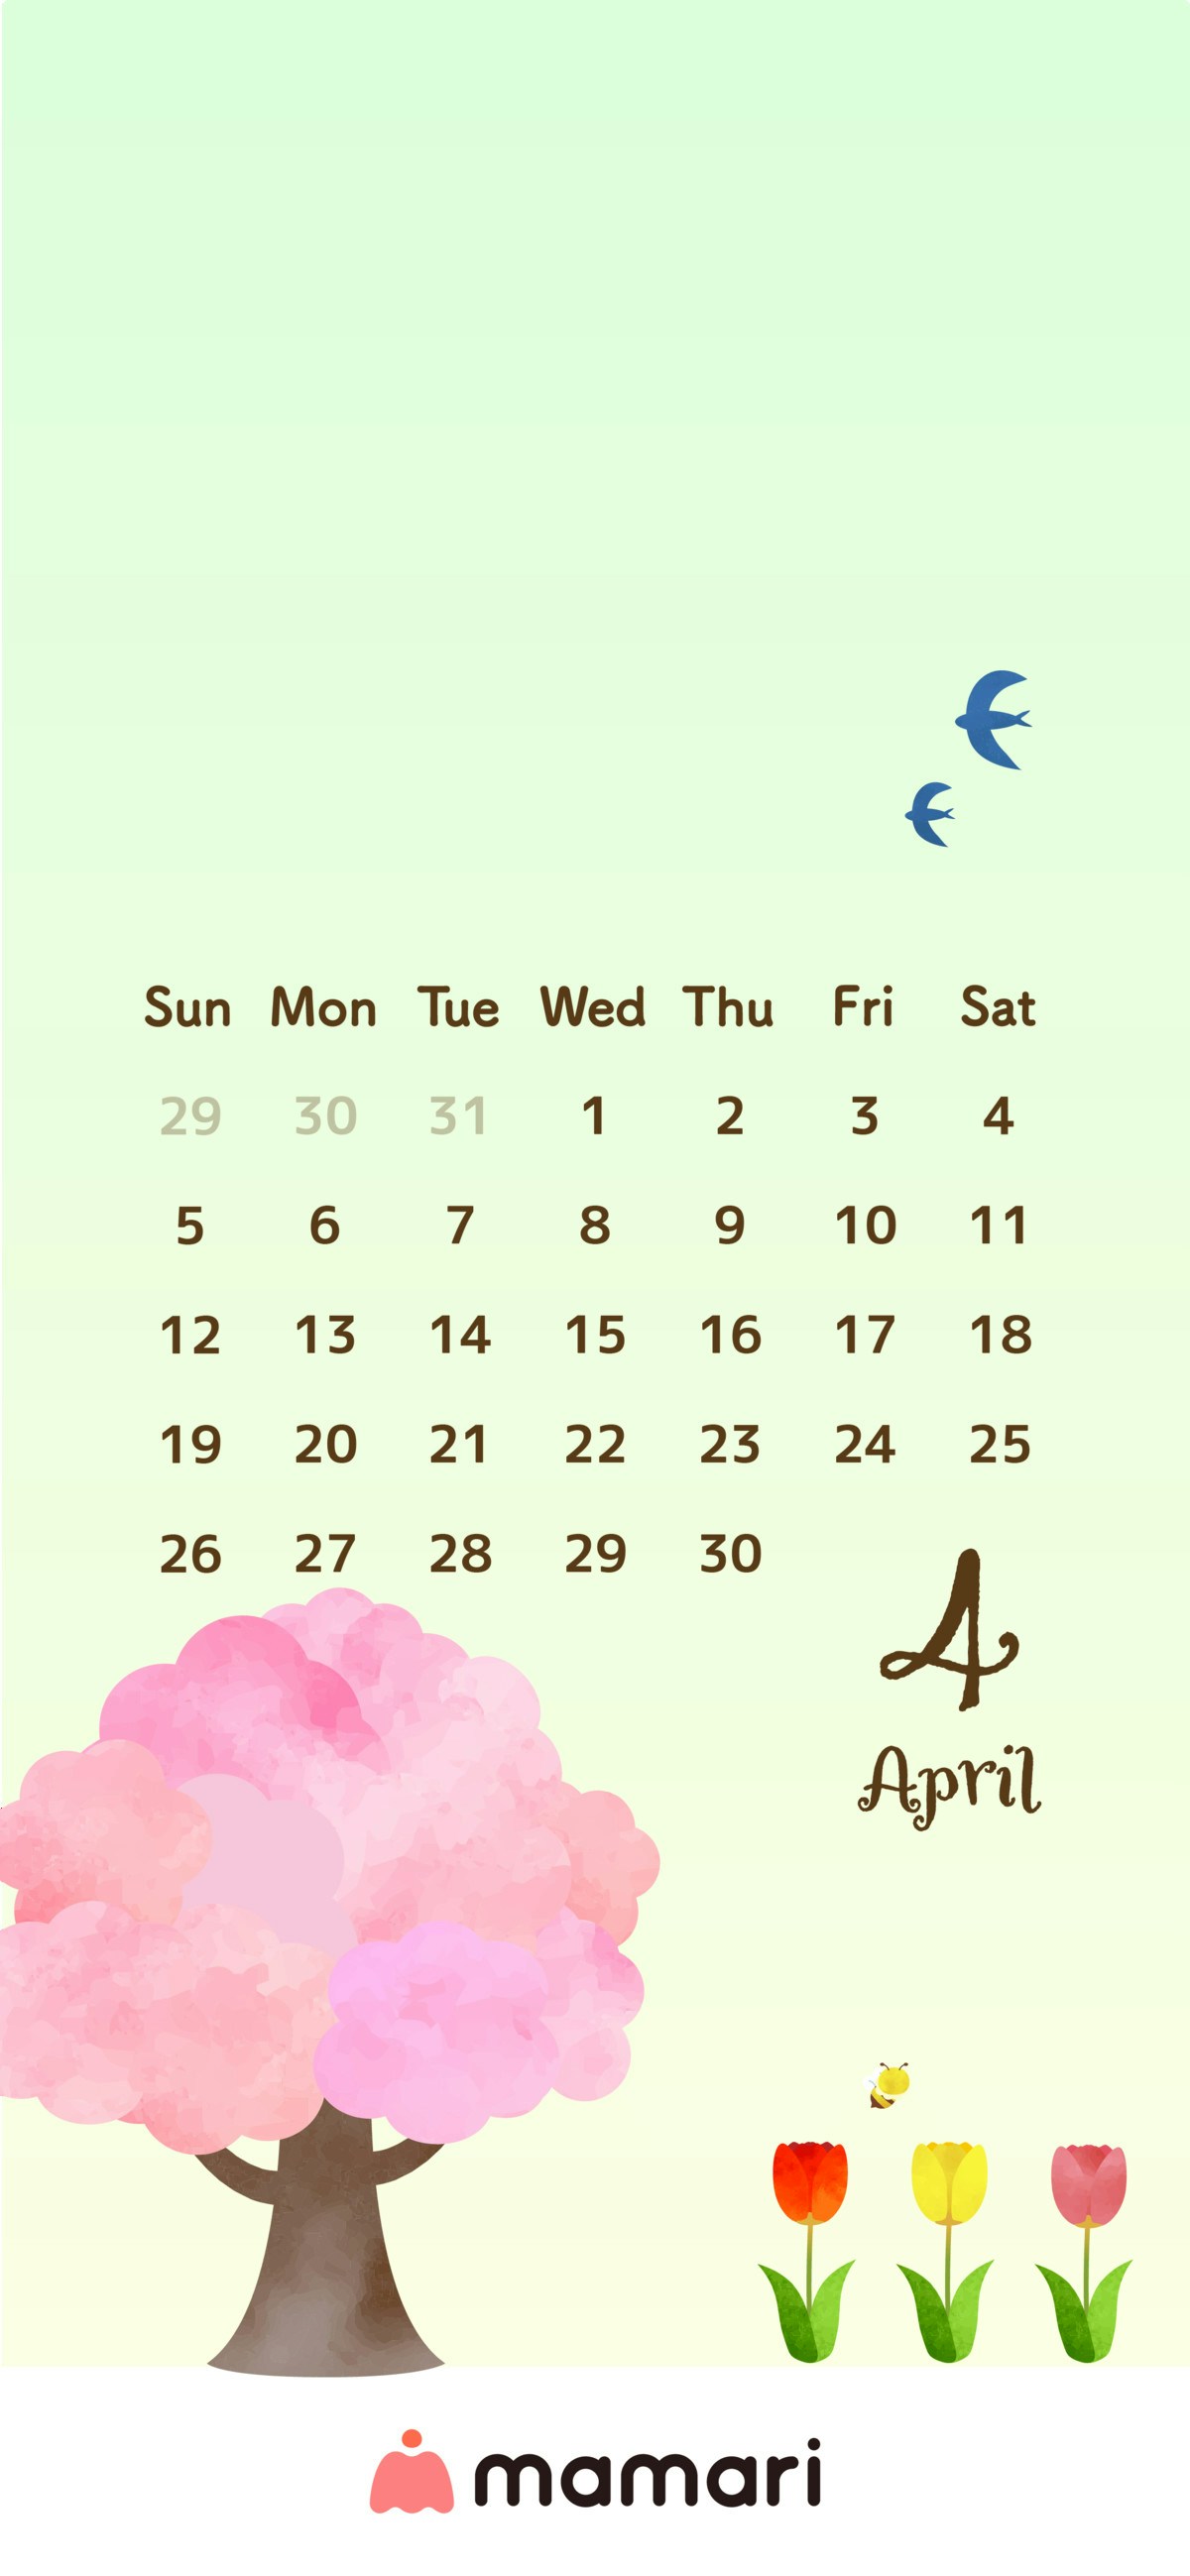 ママリオリジナル 年4月のカレンダー壁紙を無料プレゼント ママリ